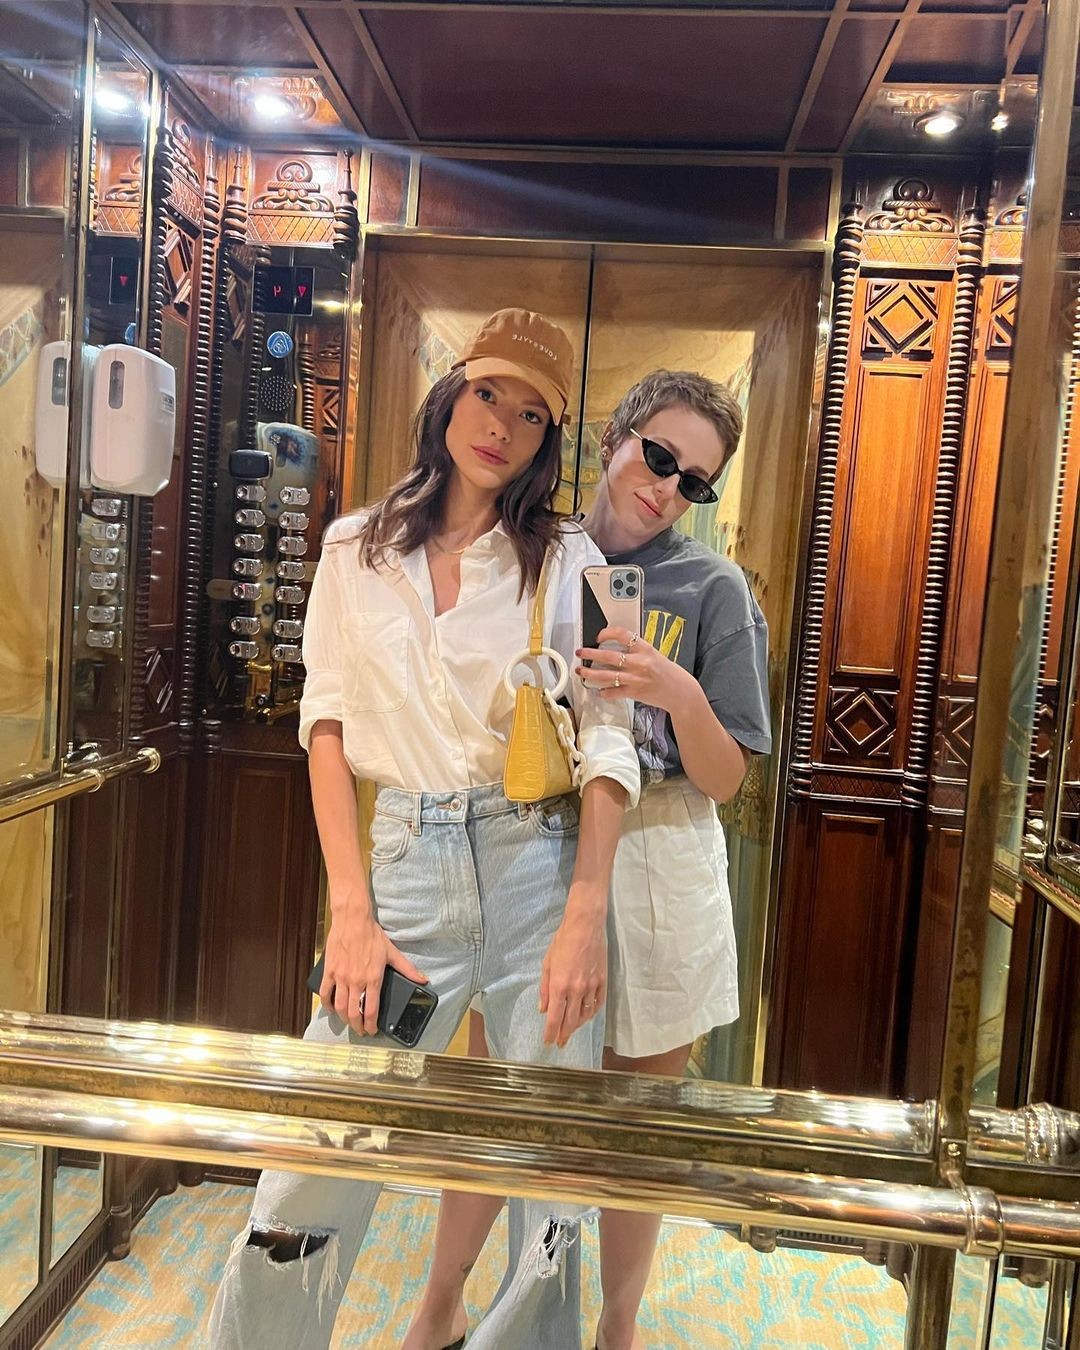 Vitória Strada e Marcella Rica celebraram 3 anos de relacionamento em 23 de março no mesmo hotel, no Rio de Janeiro (Foto: Reprodução Instagram)